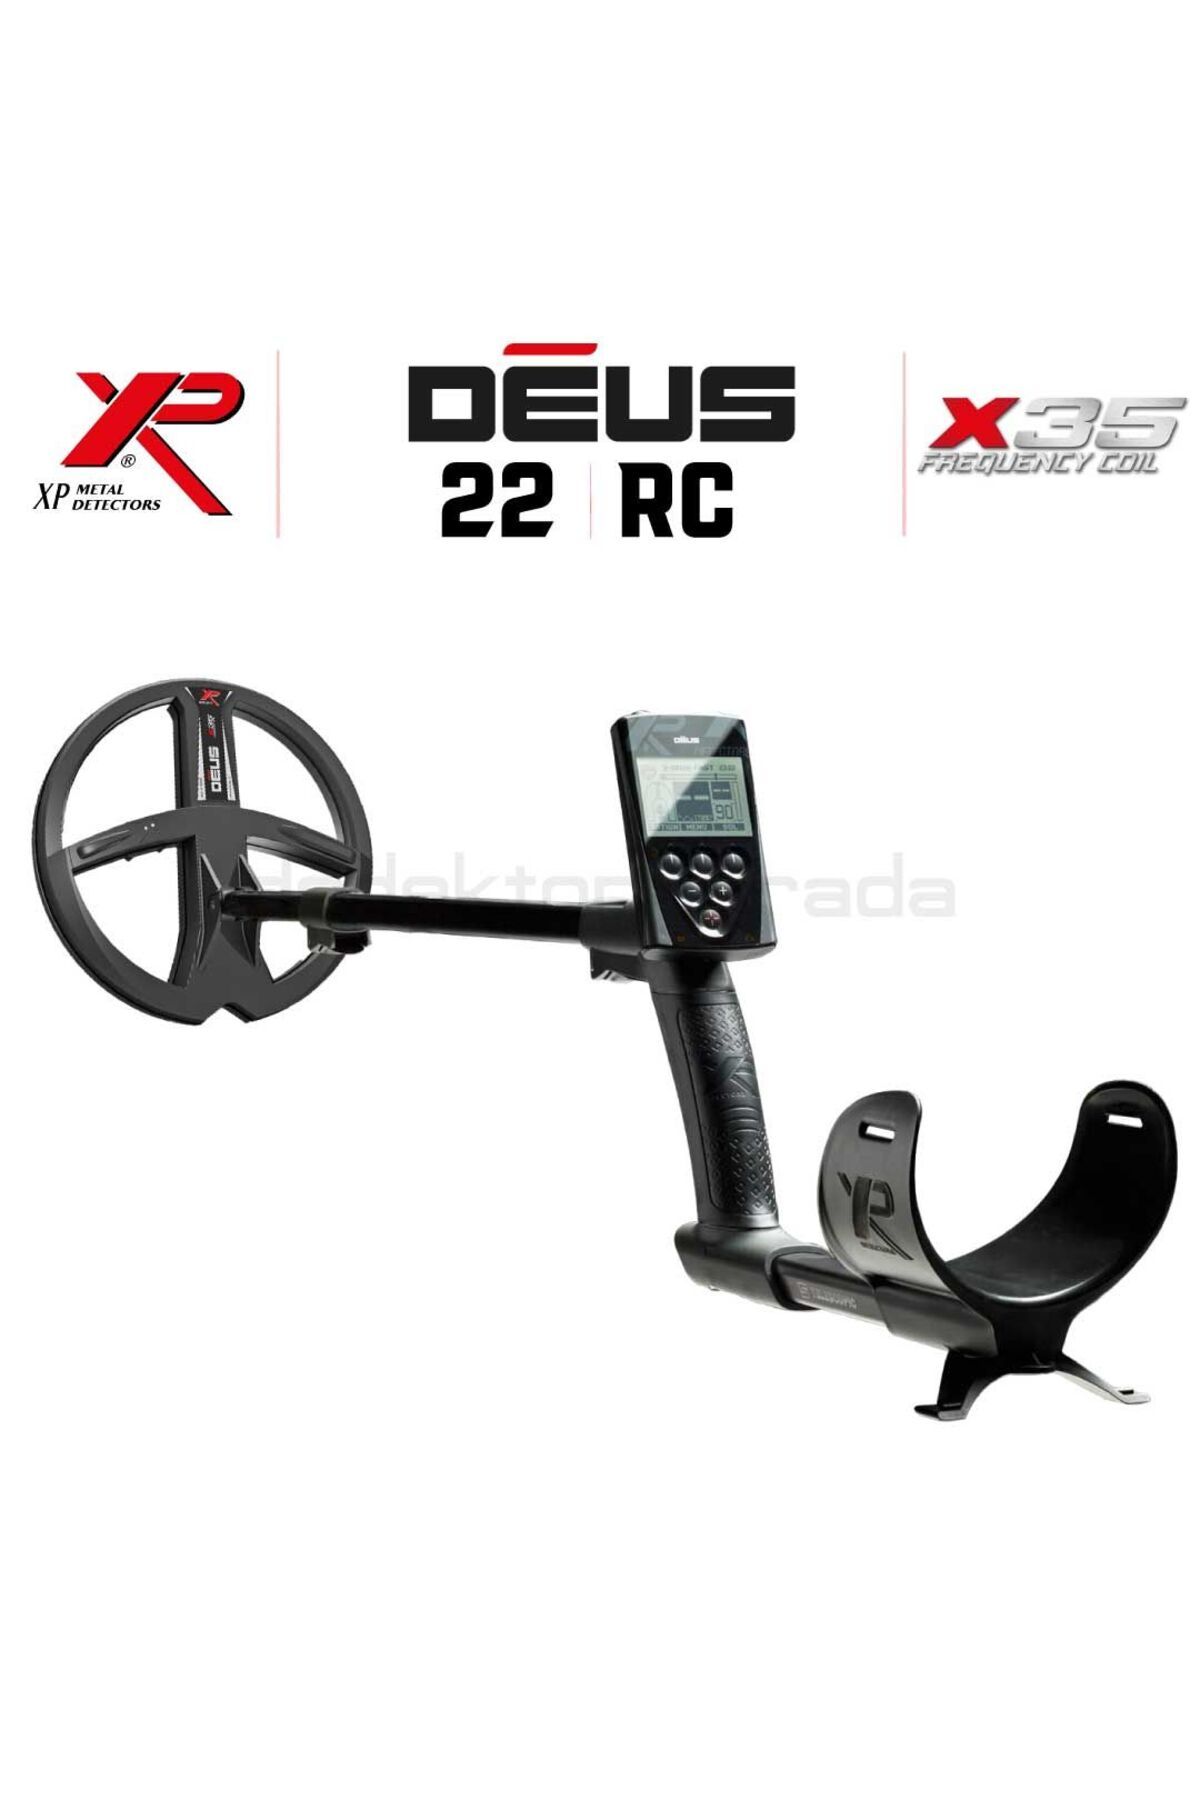 xp Deus Dedektör - 22,5cm X35 Başlık, Ana Kontrol Ünitesi